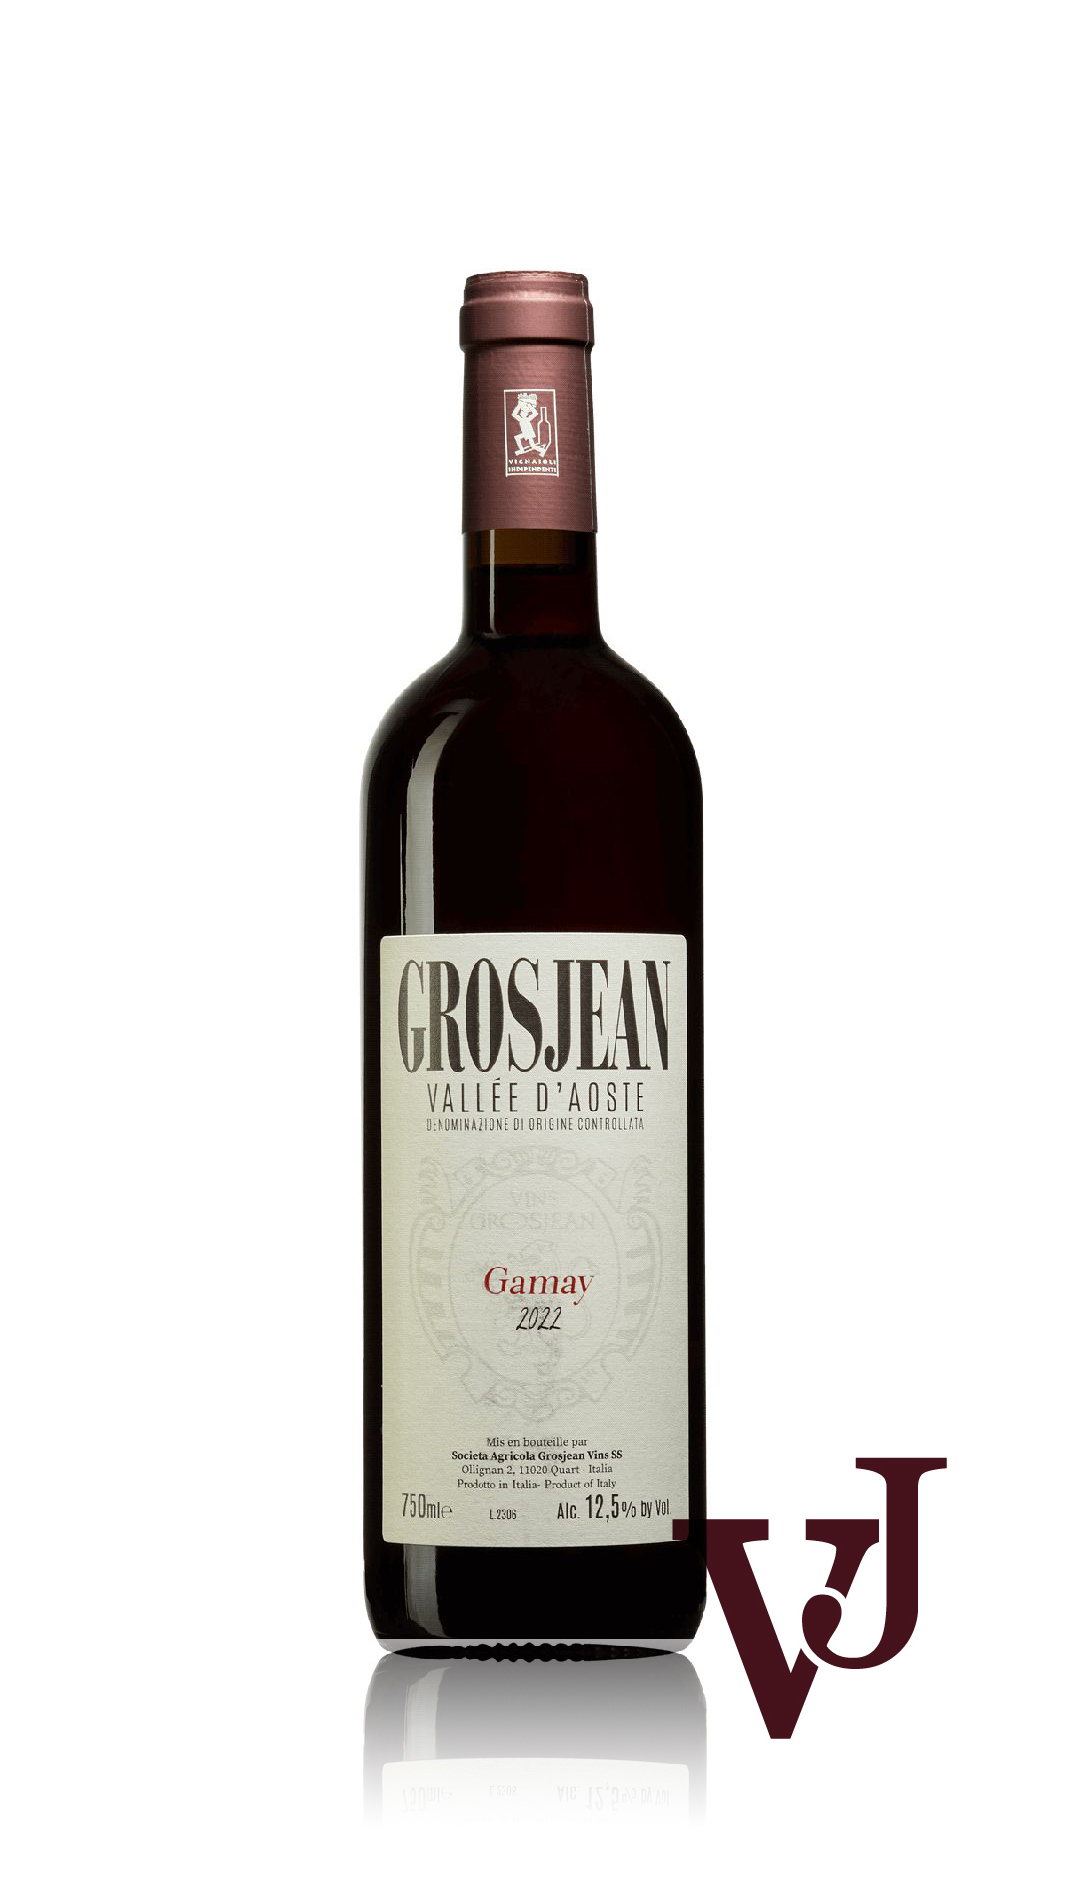 Rött Vin - Grosjean Gamay 2022 artikel nummer 9401001 från producenten Società Agricola Grosjean Vins s.s från Italien.